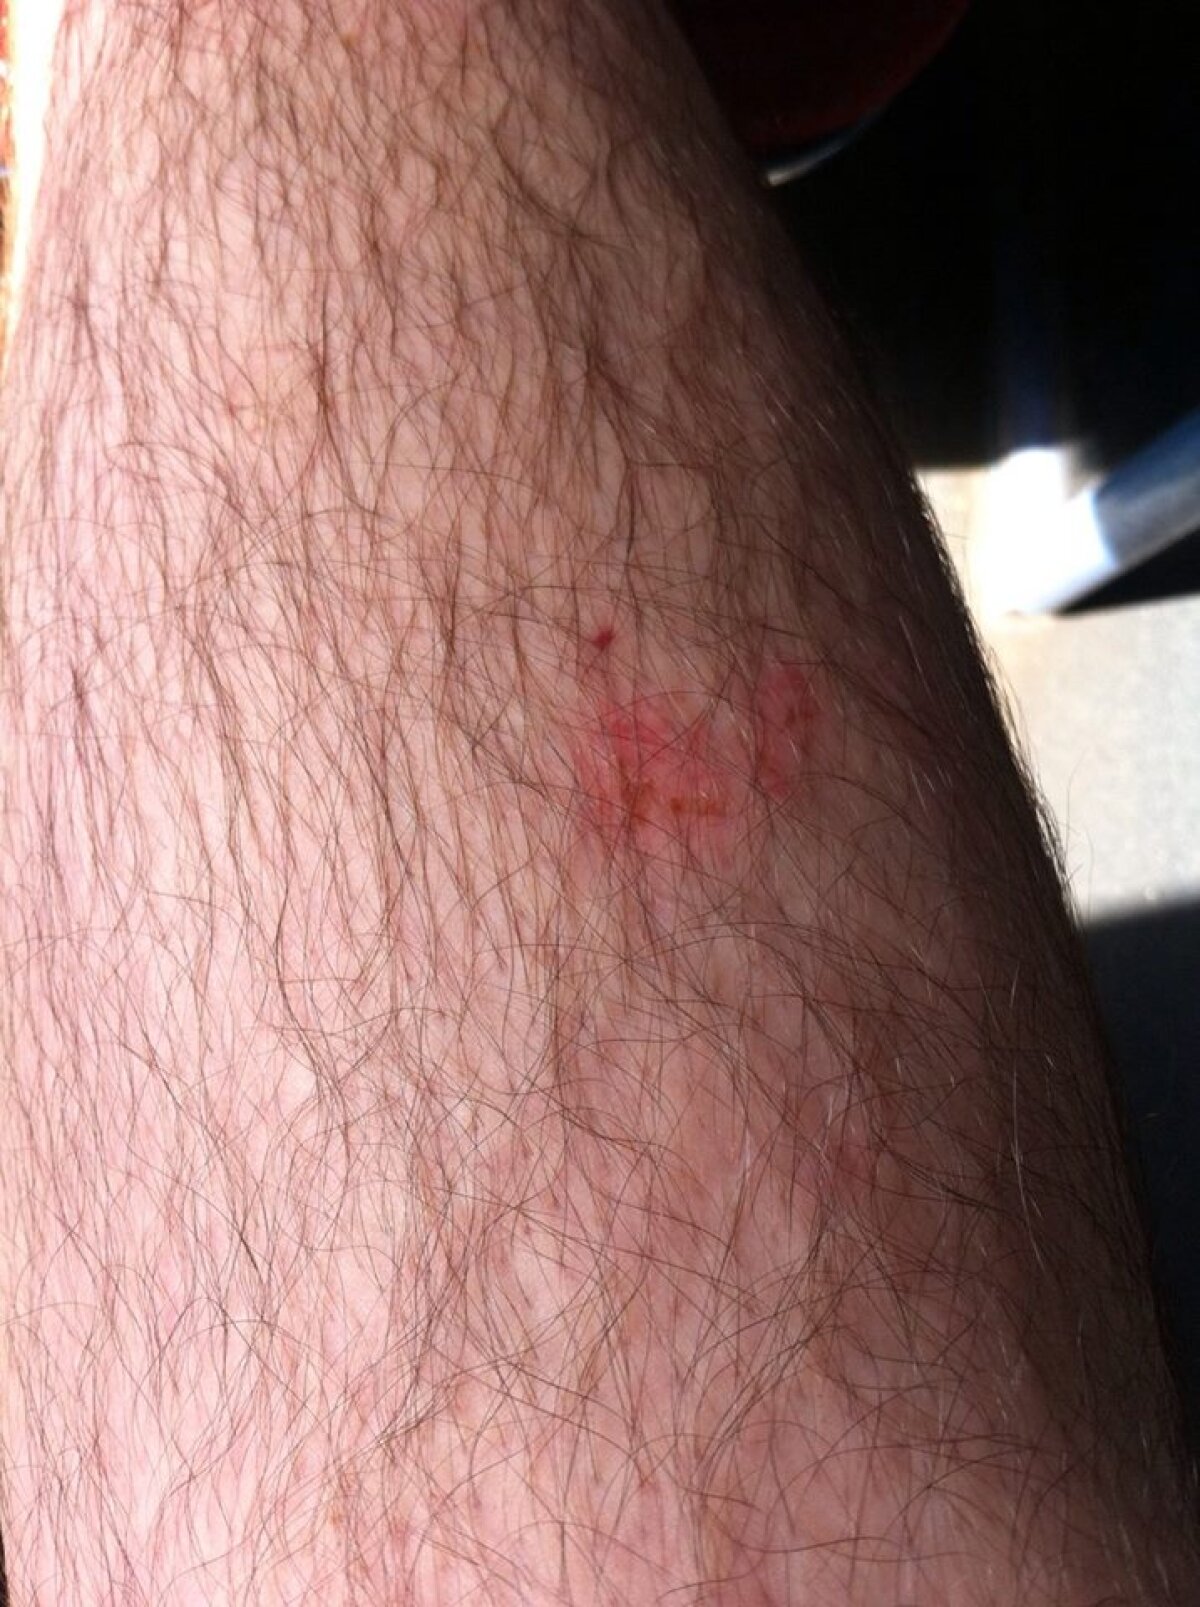 GALERIE FOTO Pericol de accidentare pe stadion din Liga 1 » Un fan a ieșit cu răni de la Tribuna 0